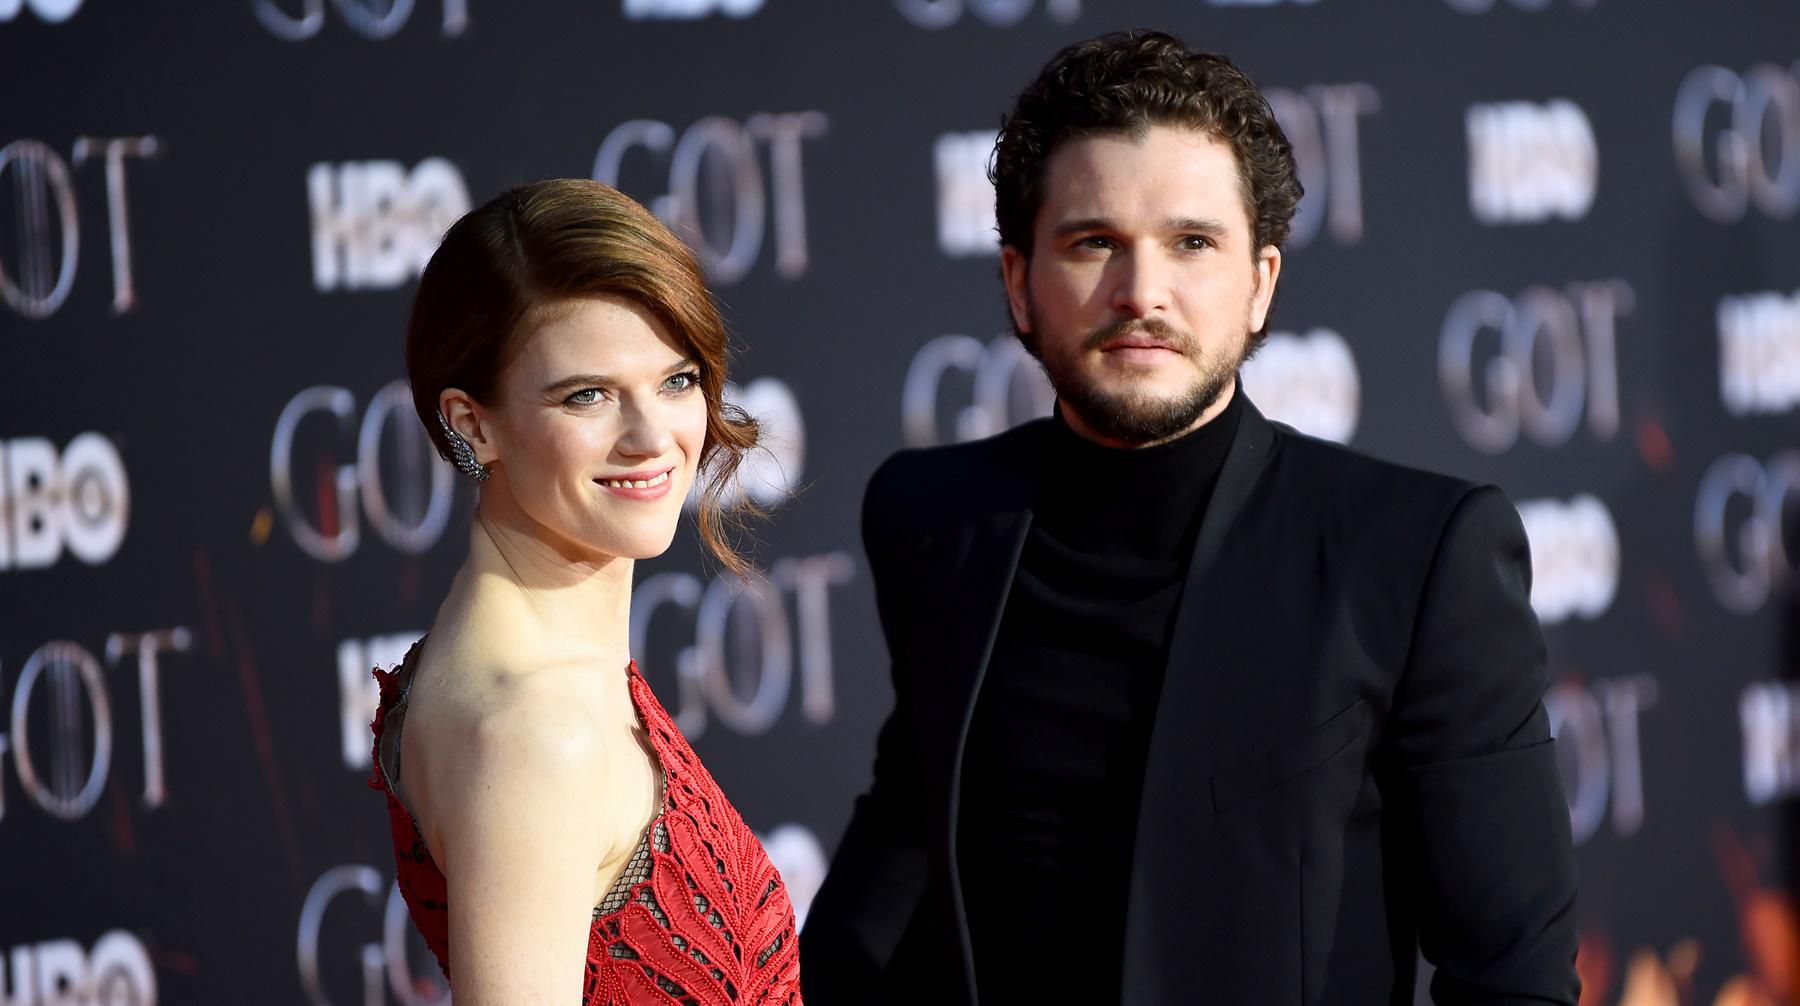 Ambos actores se conocieron en la filmación de "Game of Thrones" y ahora están casados. Foto: Agencias.